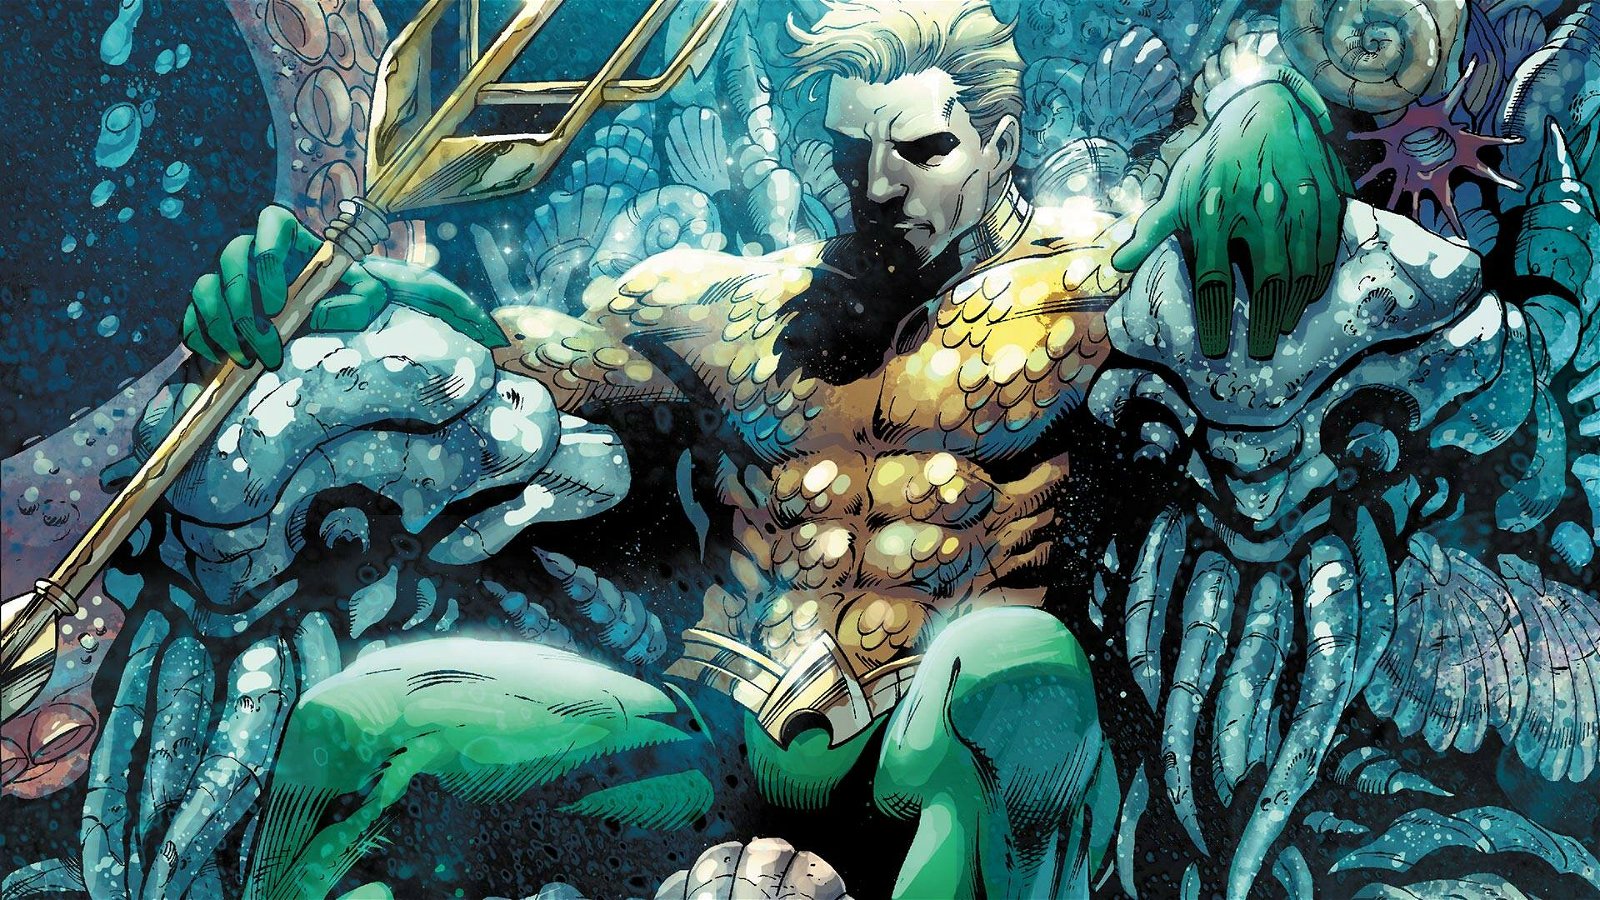 Immagine di Aquaman, le origini del re di Atlantide targato DC